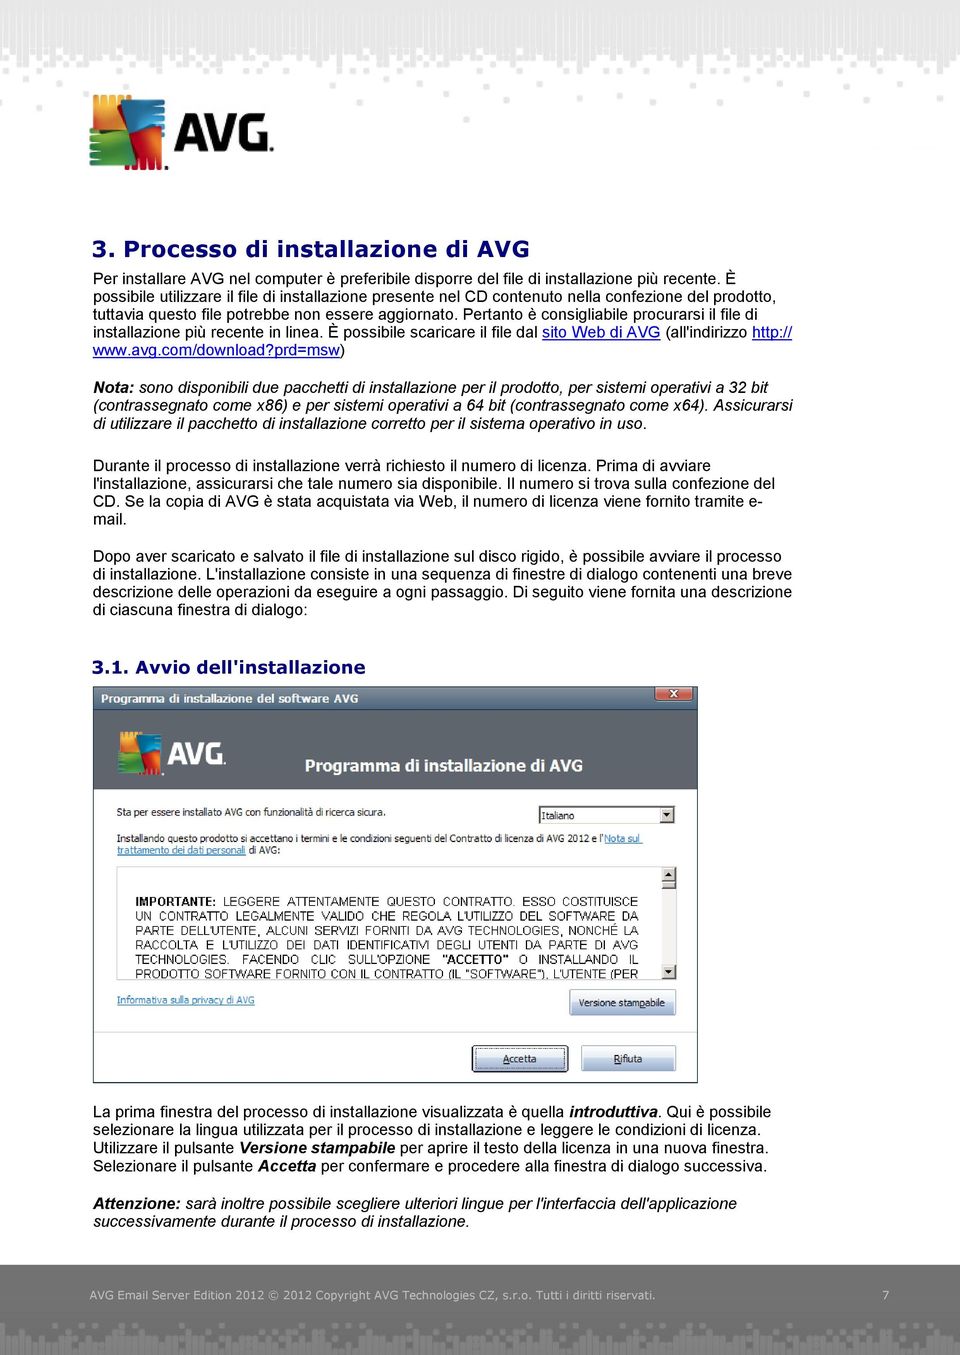 Pertanto è consigliabile procurarsi il file di installazione più recente in linea. È possibile scaricare il file dal sito Web di AVG (all'indirizzo http:// www.avg.com/download?